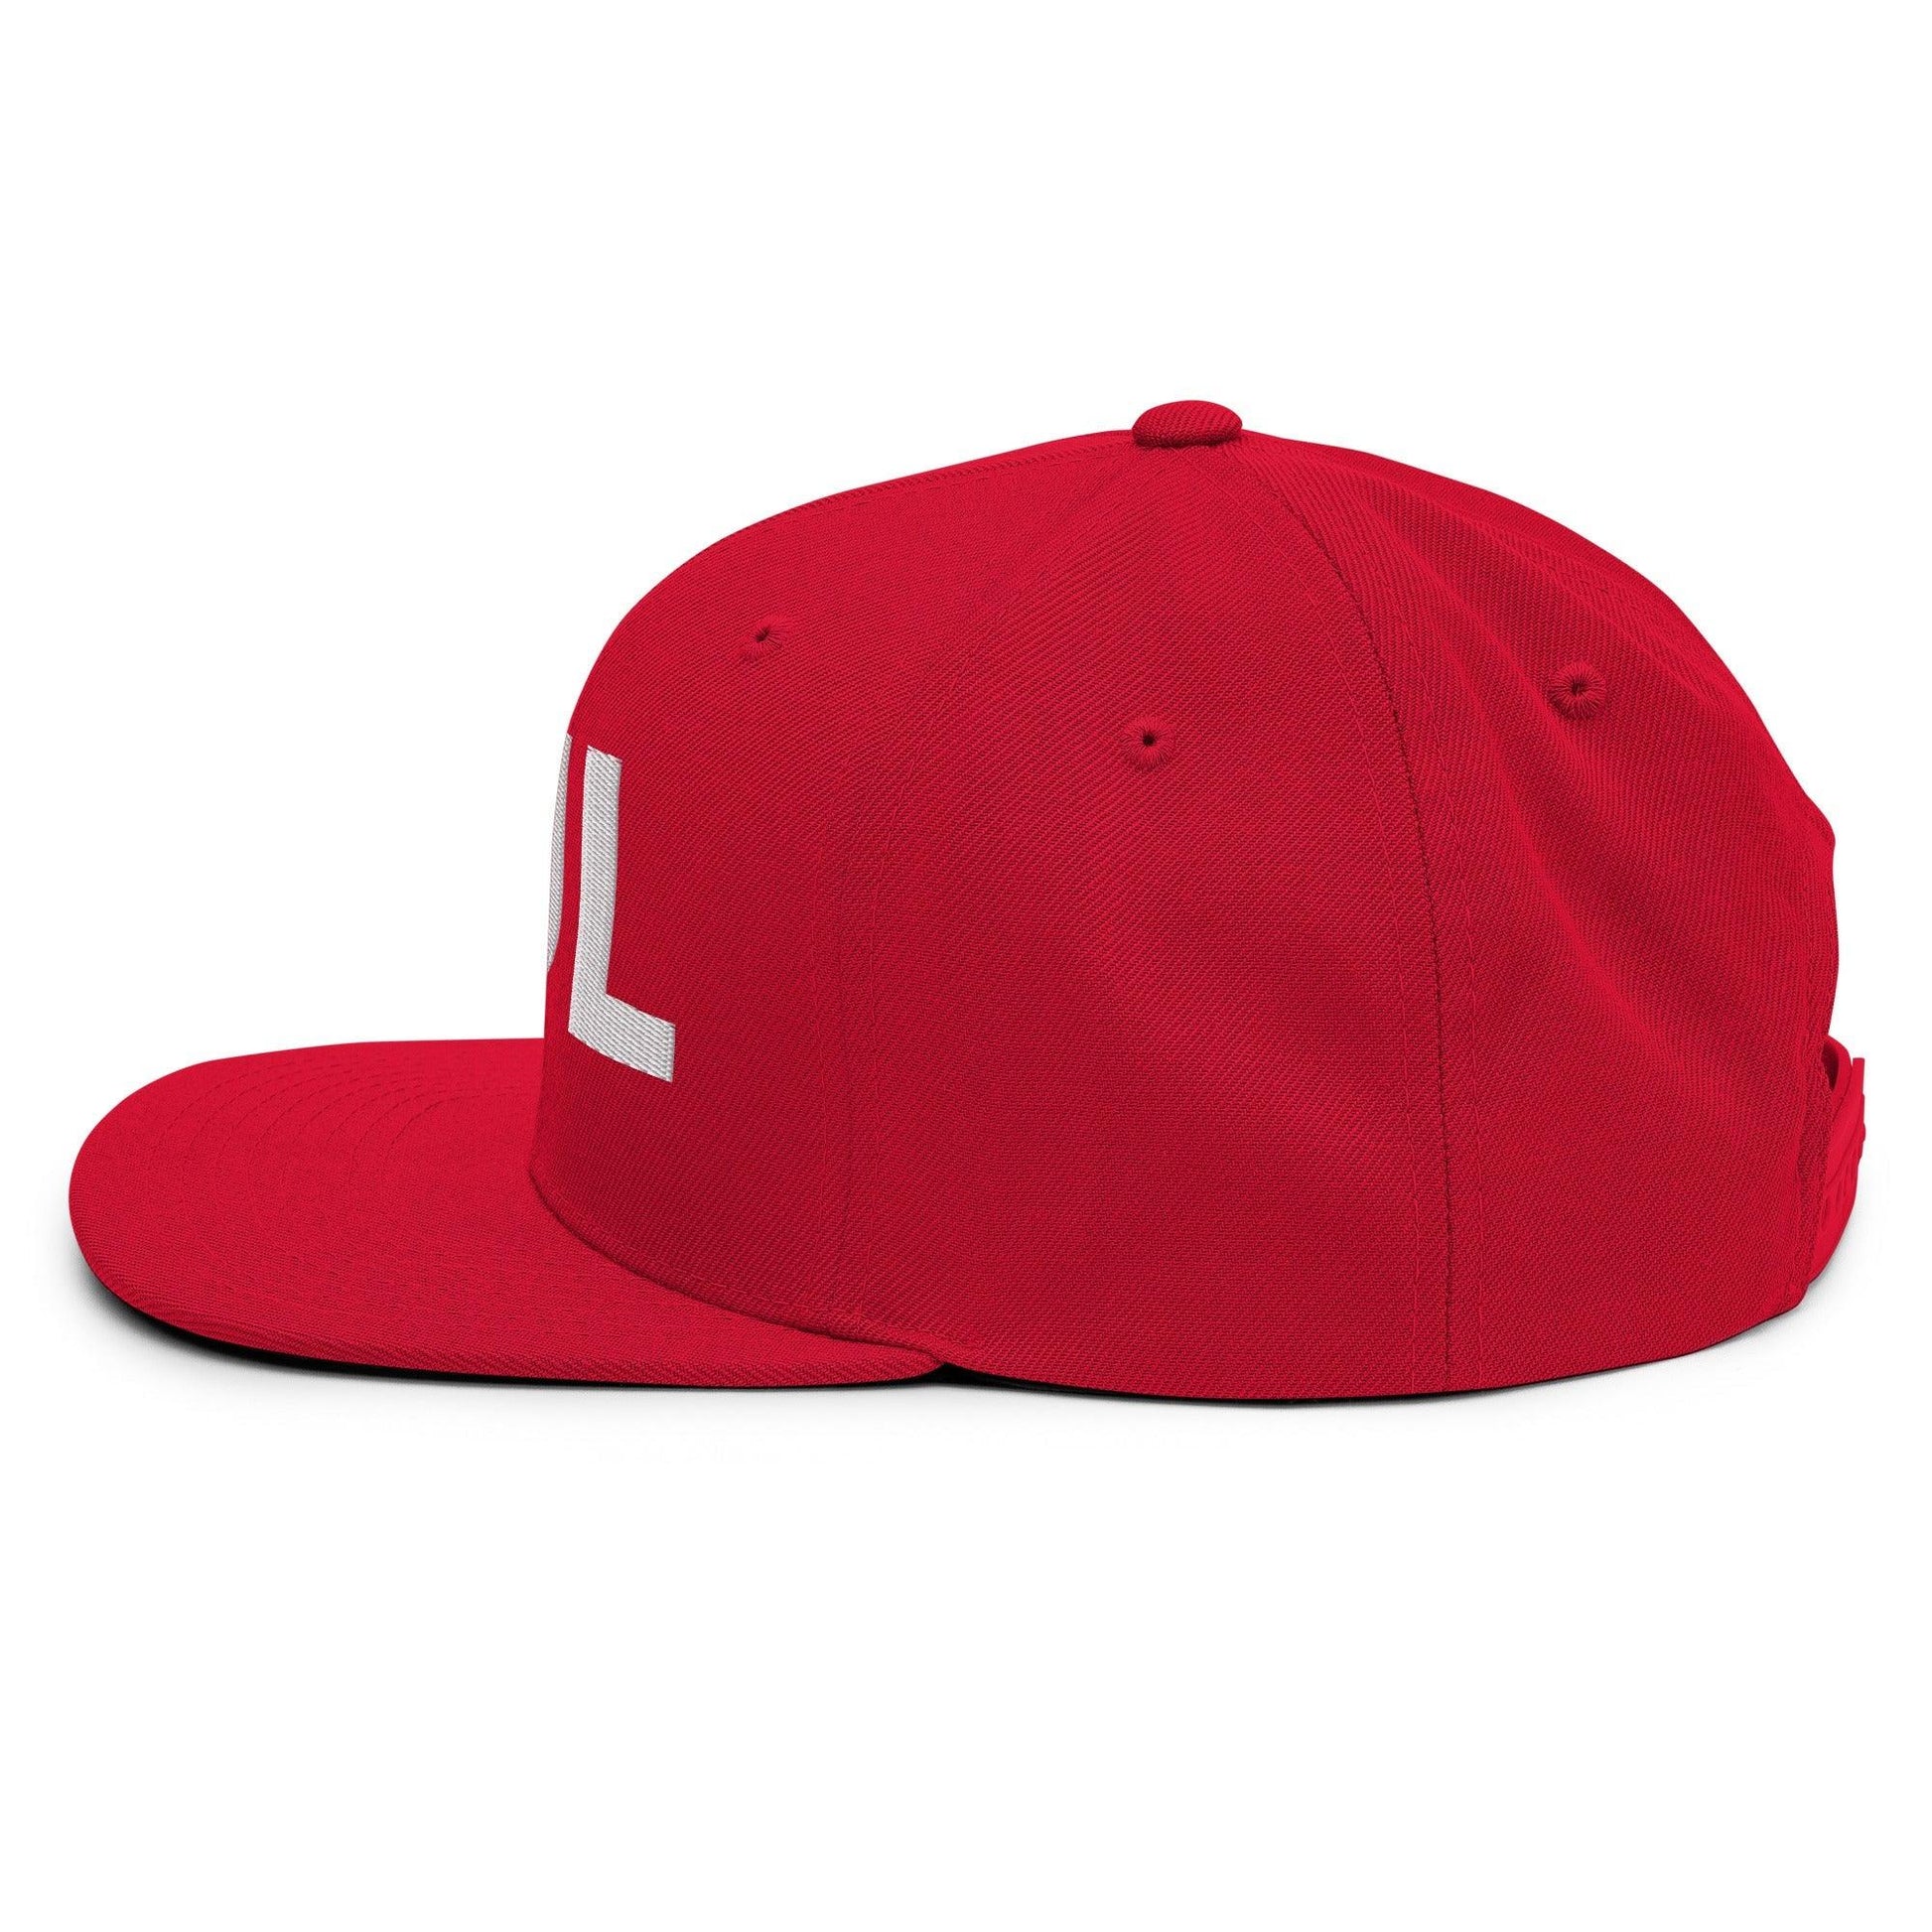 Tulsa TUL Vintage Block Snapback Hat Red